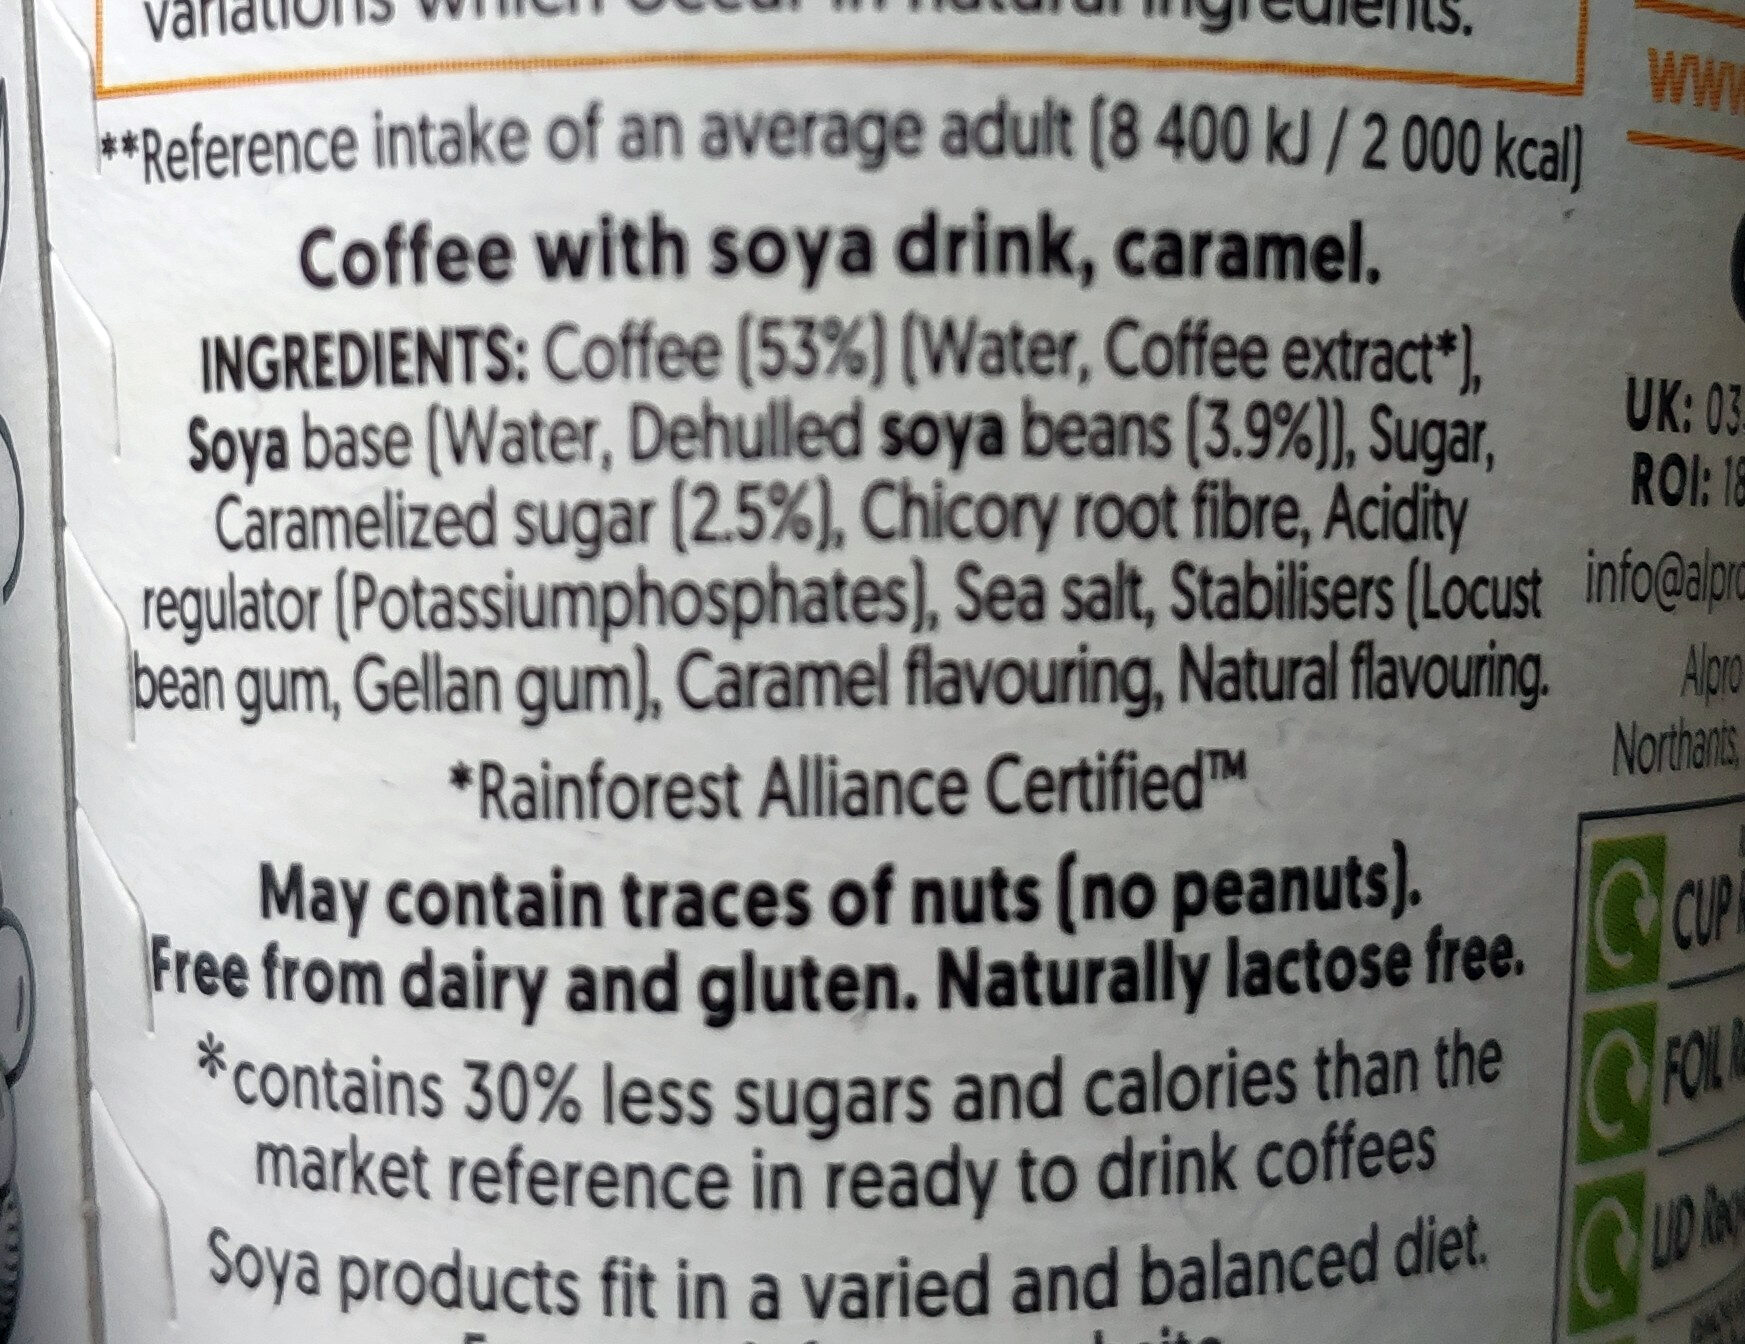 Caffè latte caramel soya - Ingredients